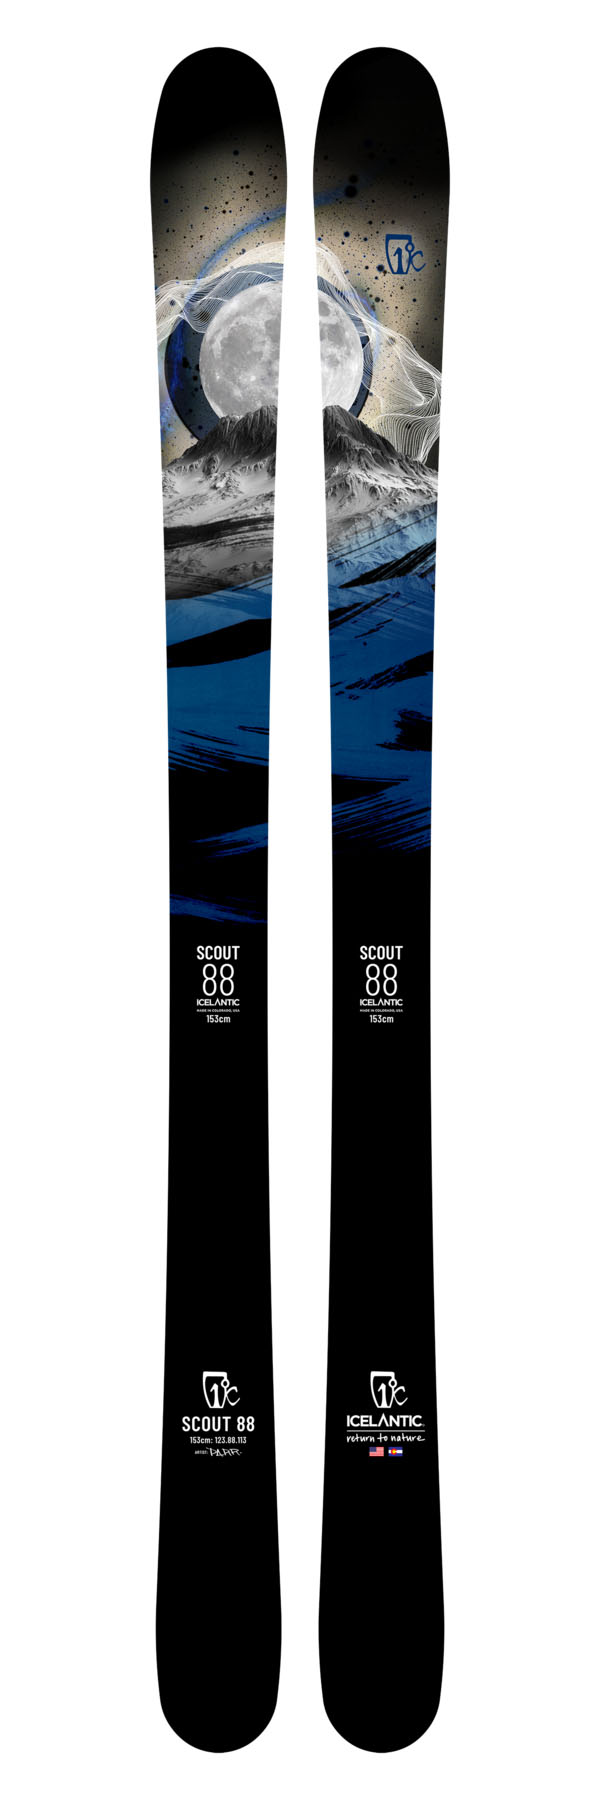 Лыжи для подготовленного склона Icelantic Scout 88 2021/2022